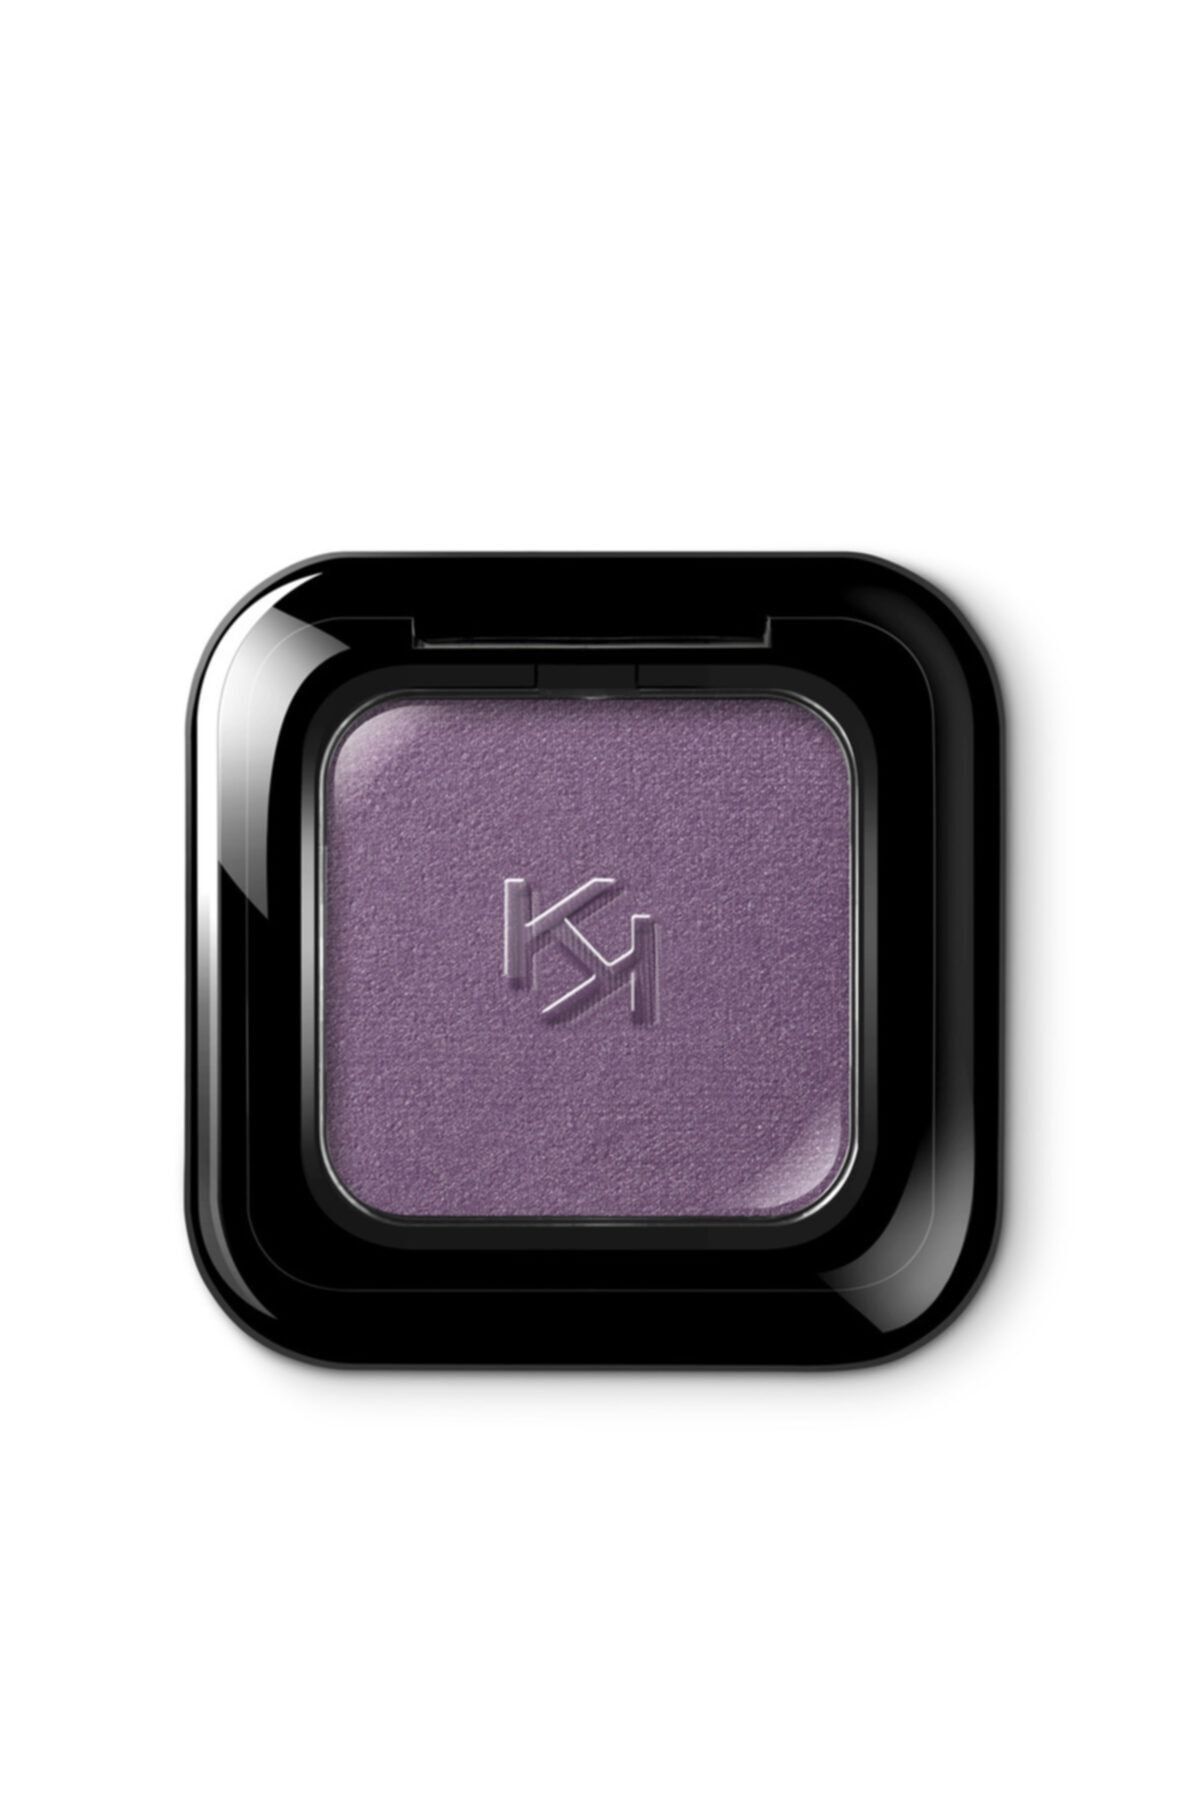 KIKO Göz Farı - High Pigment Eyeshadow 44 Satin Eggplant